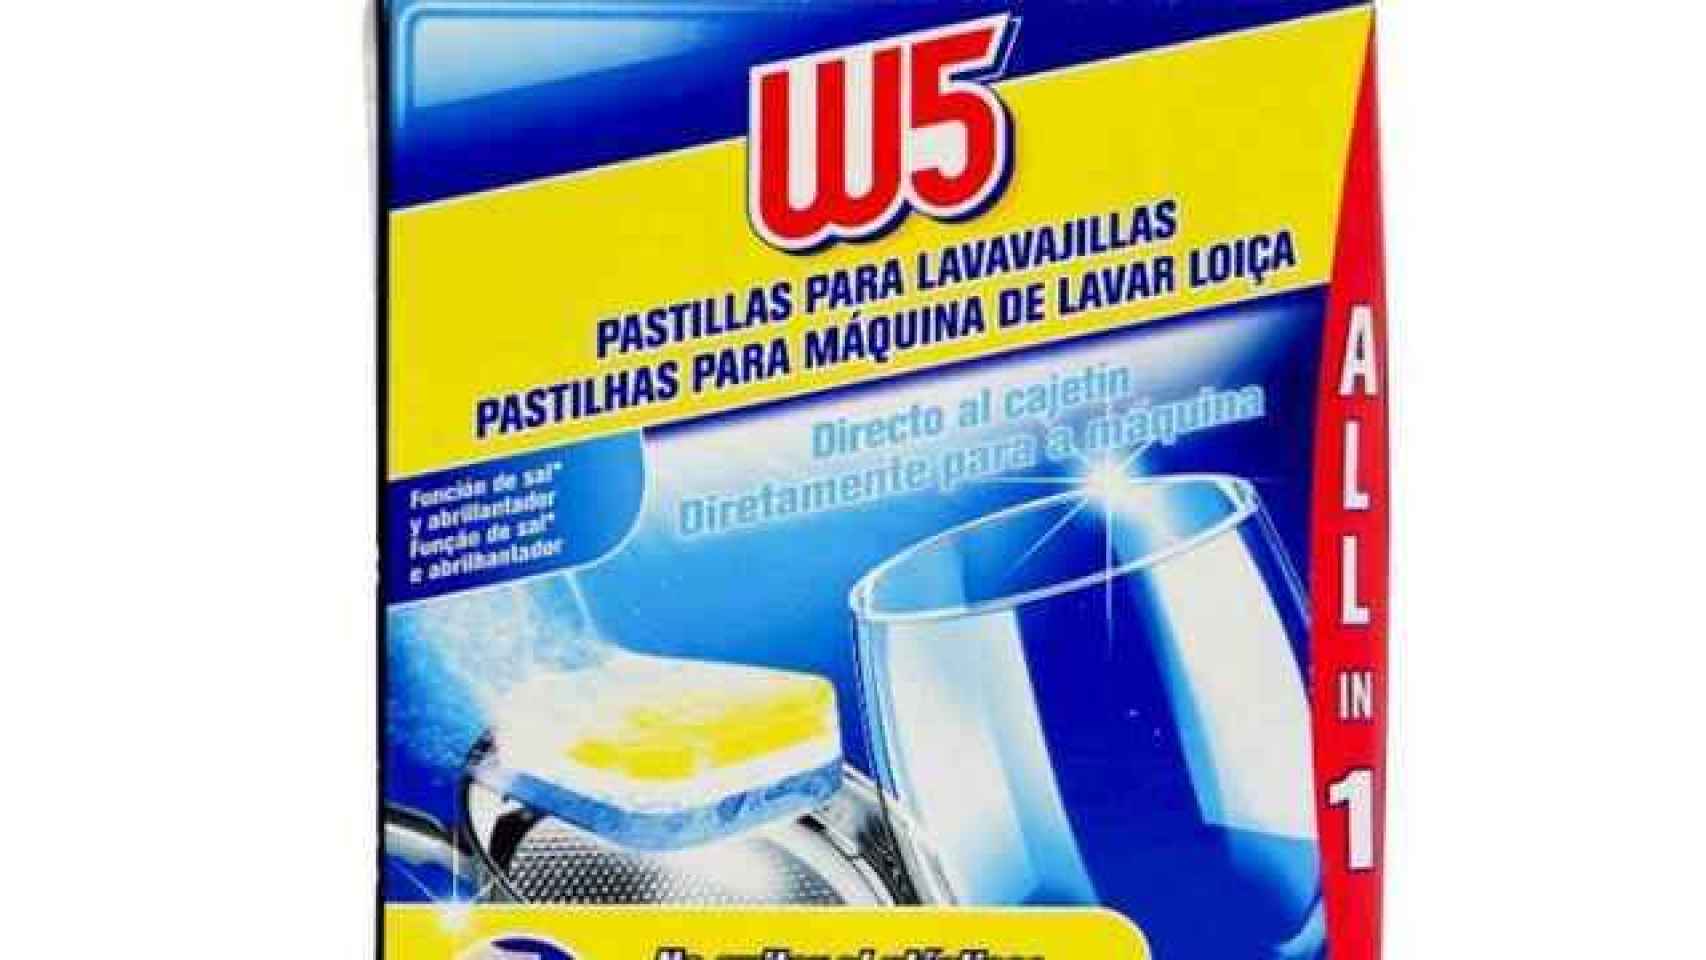 Detergente para lavavajillas de W5, la marca blanca de Lidl.